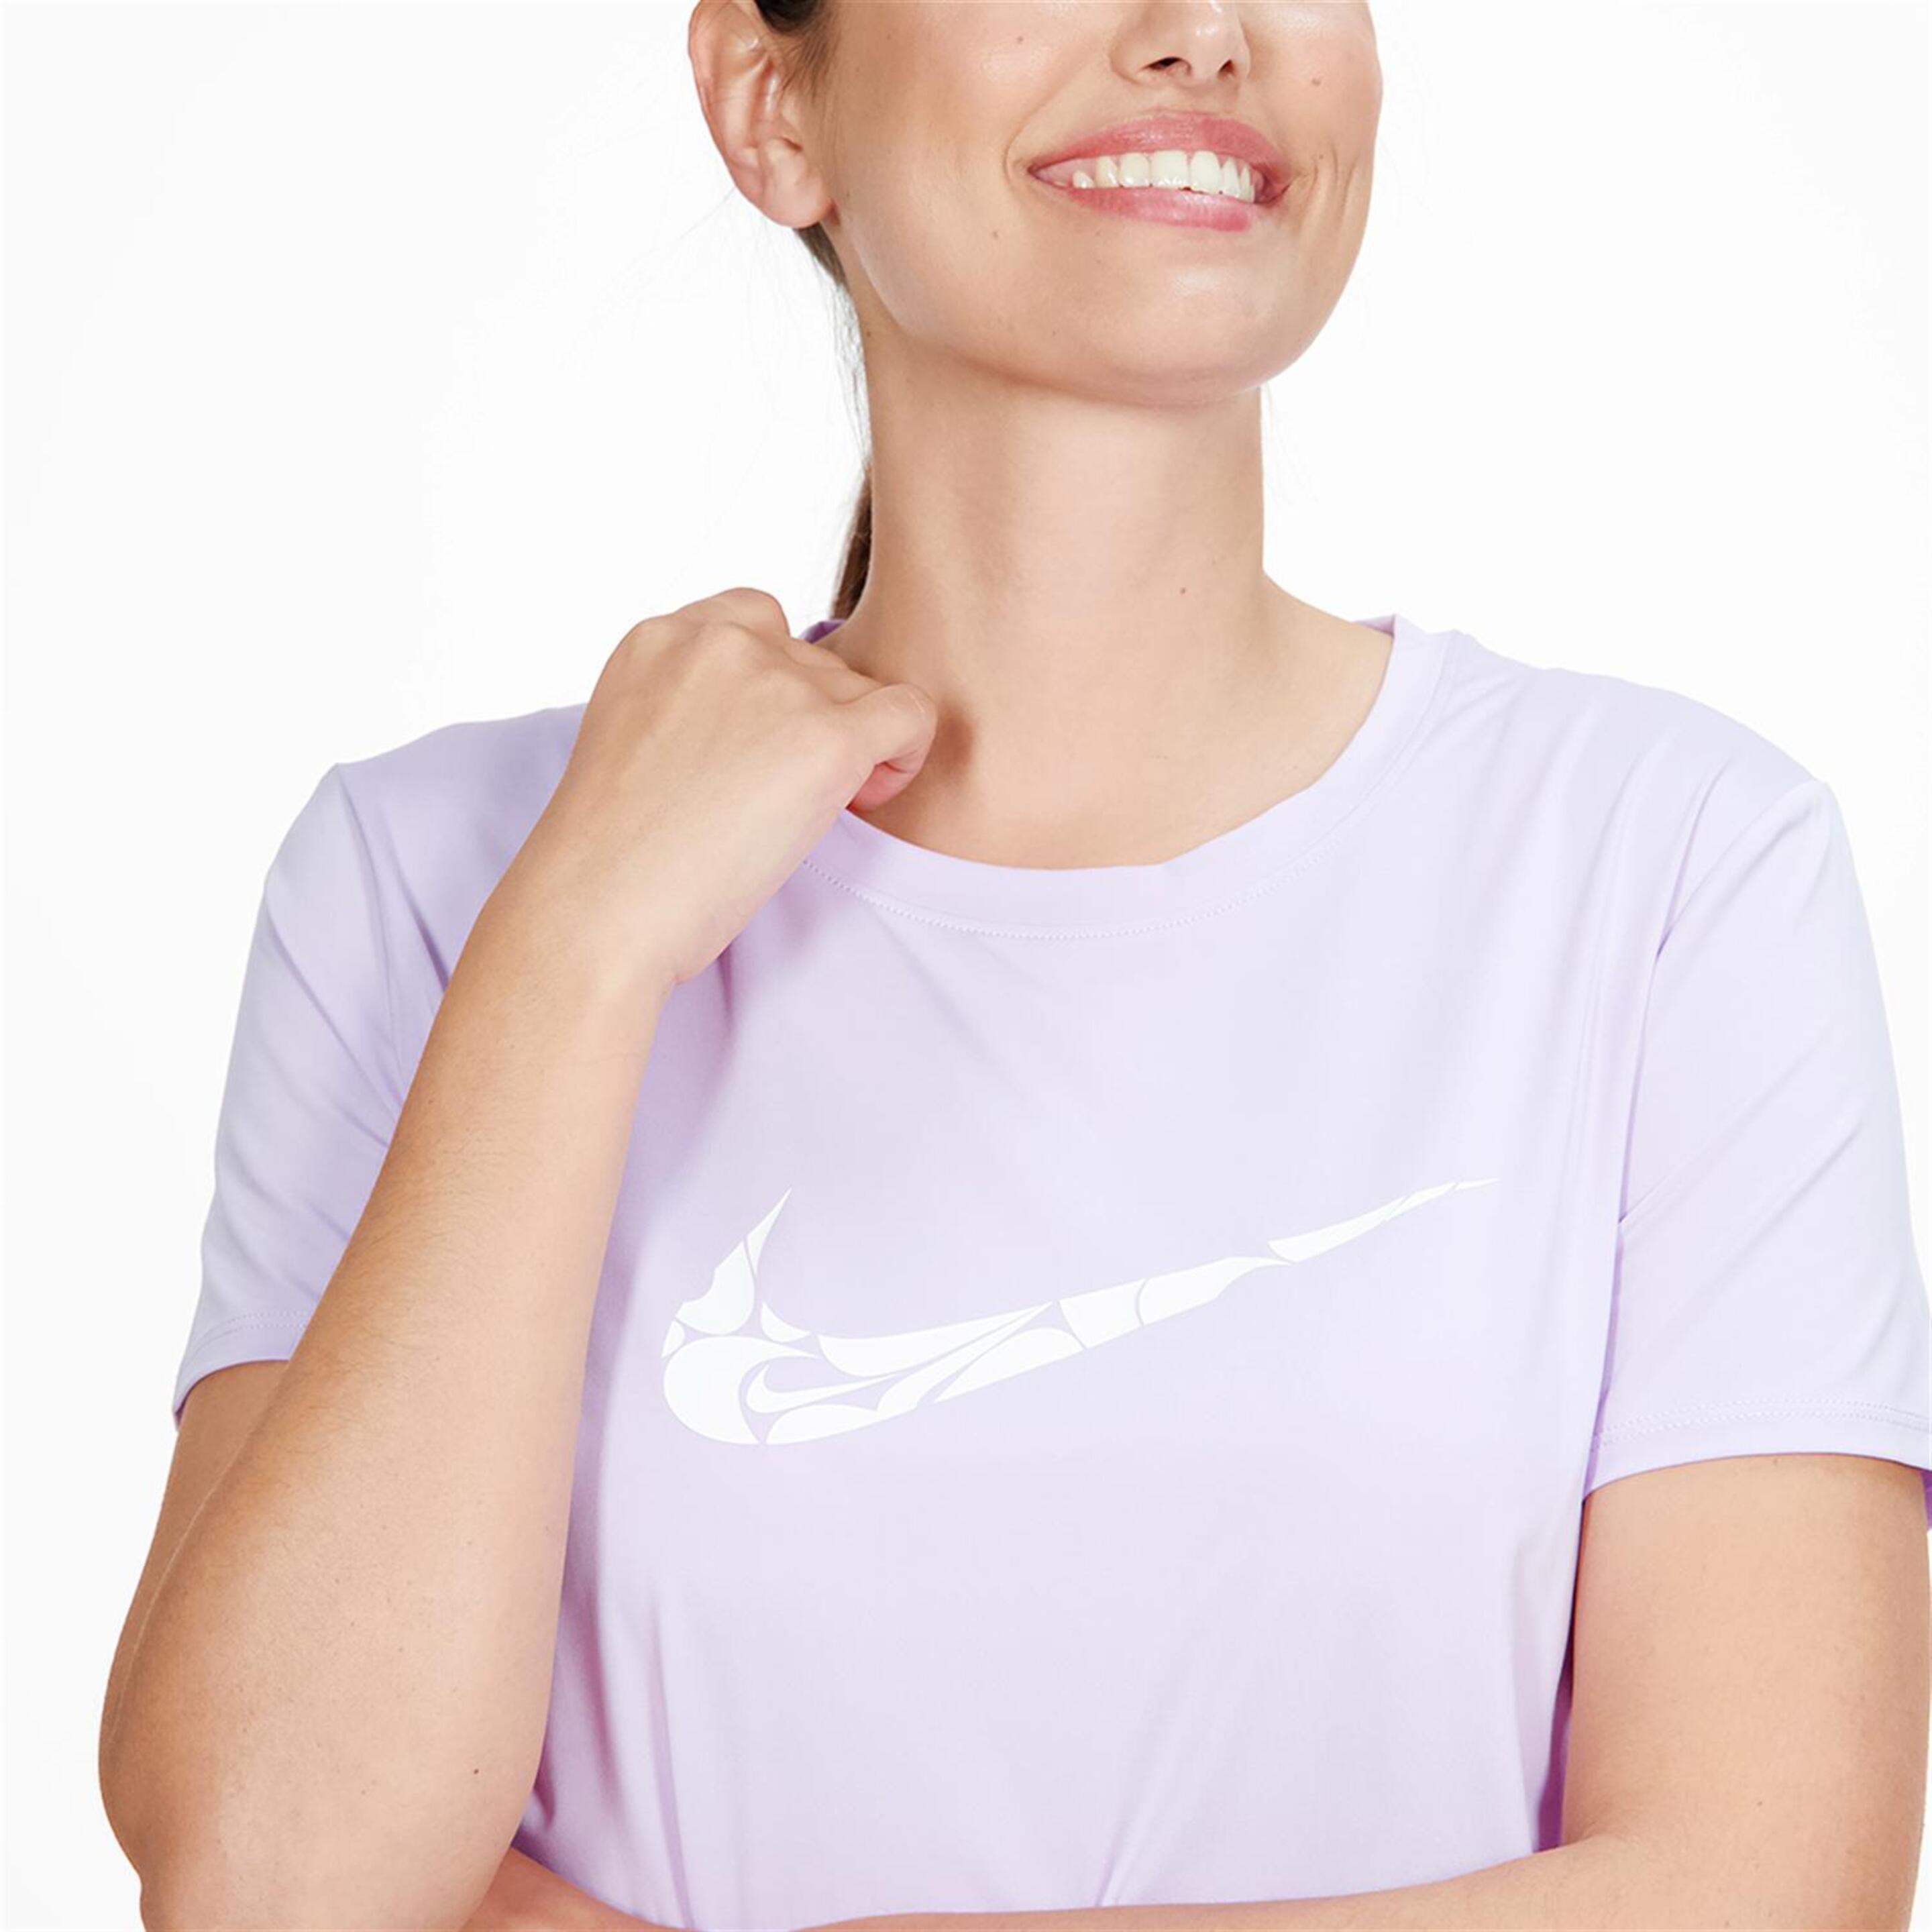 Nike One Swoosh - Malva - Camiseta Running Mujer